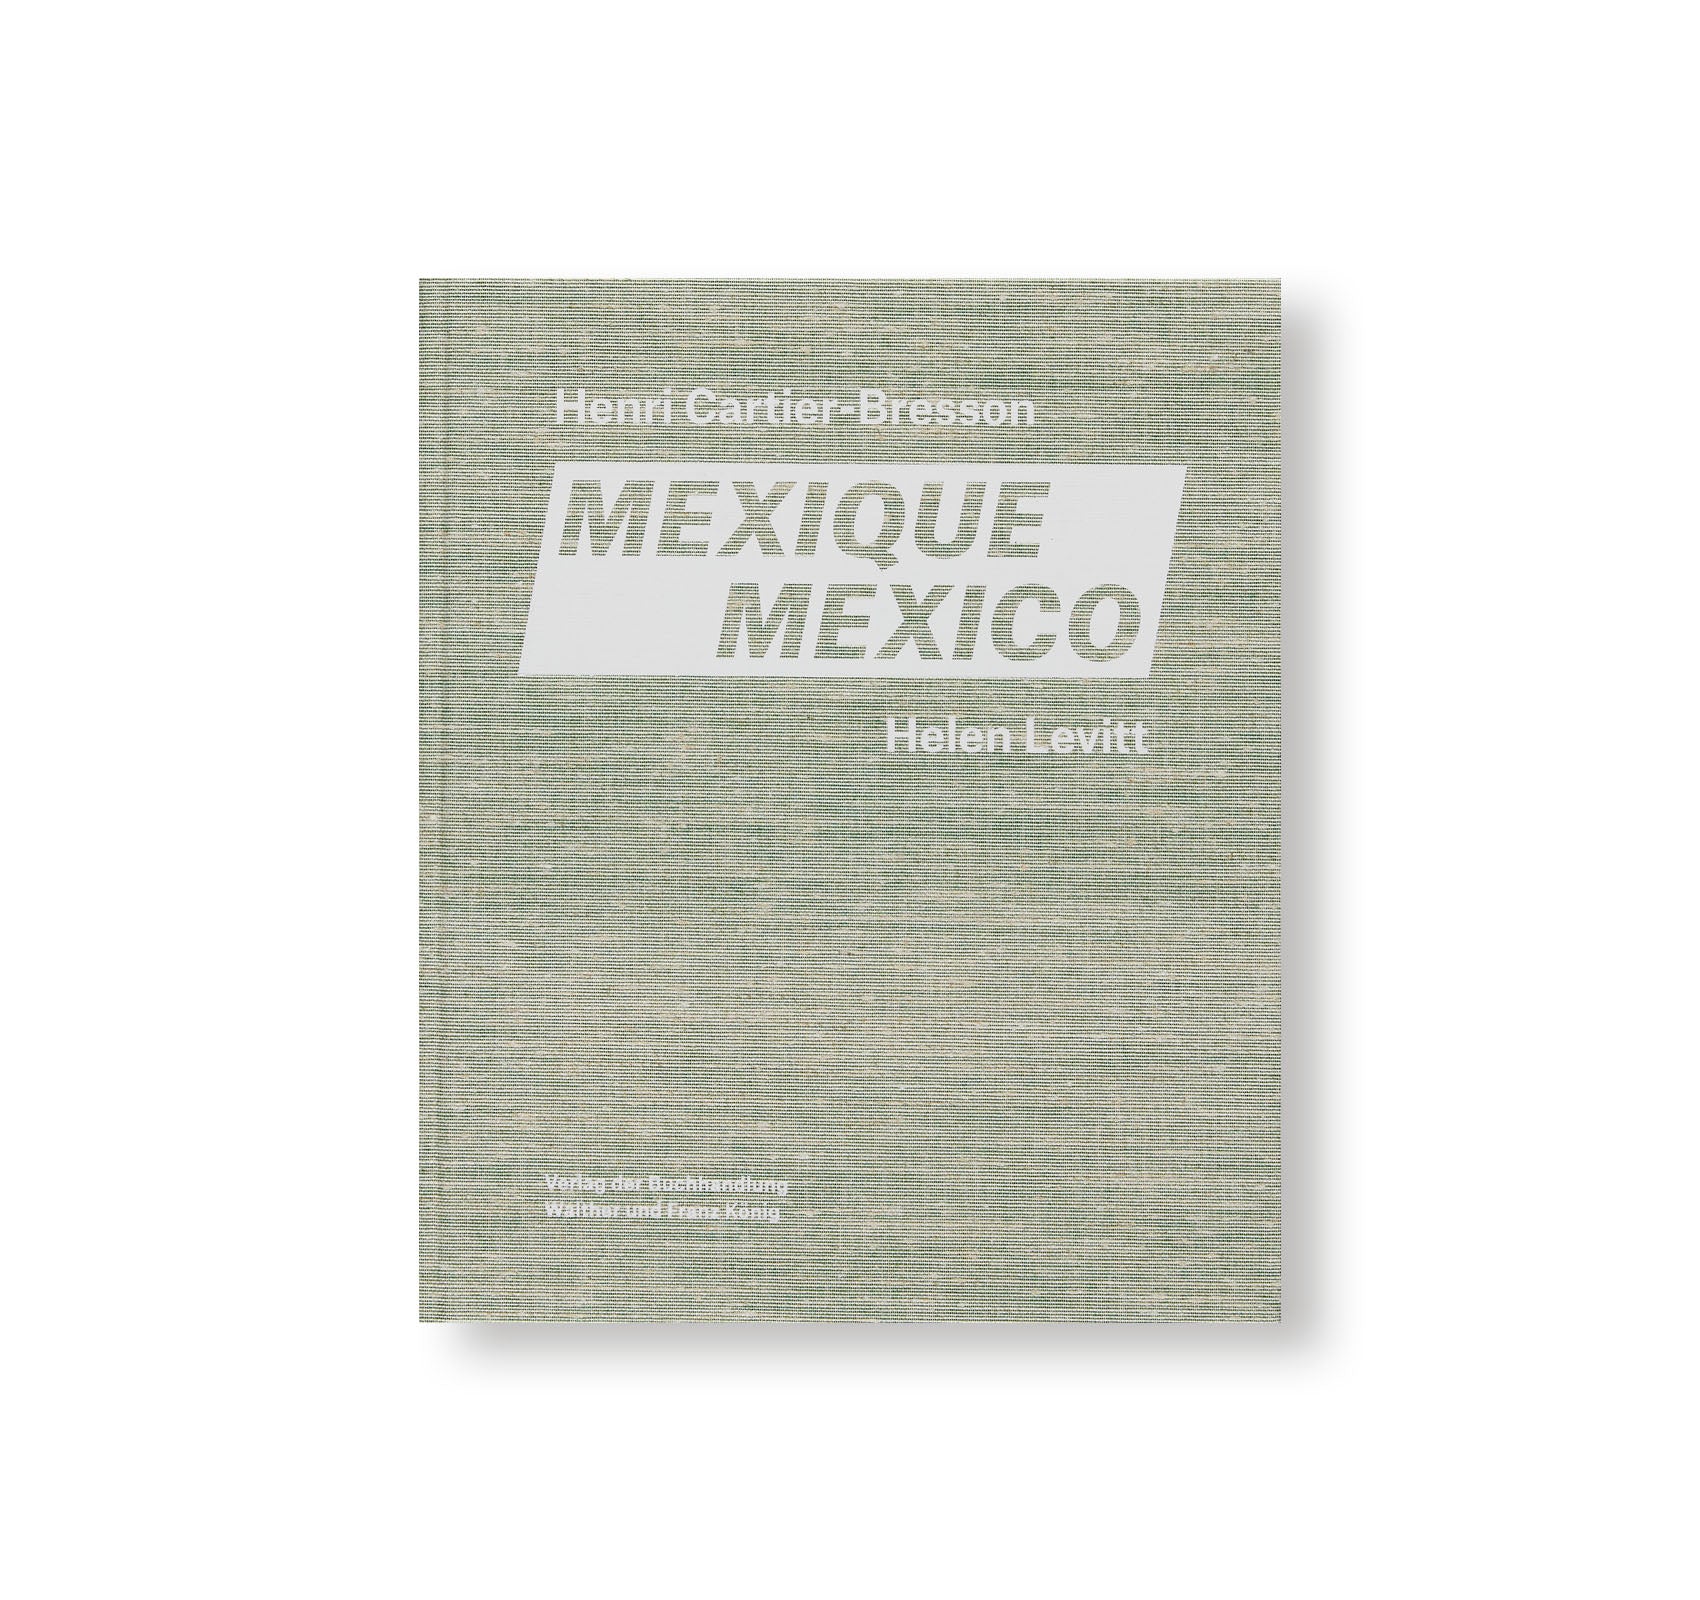 MEXICO by Henri Cartier-Bresson, Helen Levitt